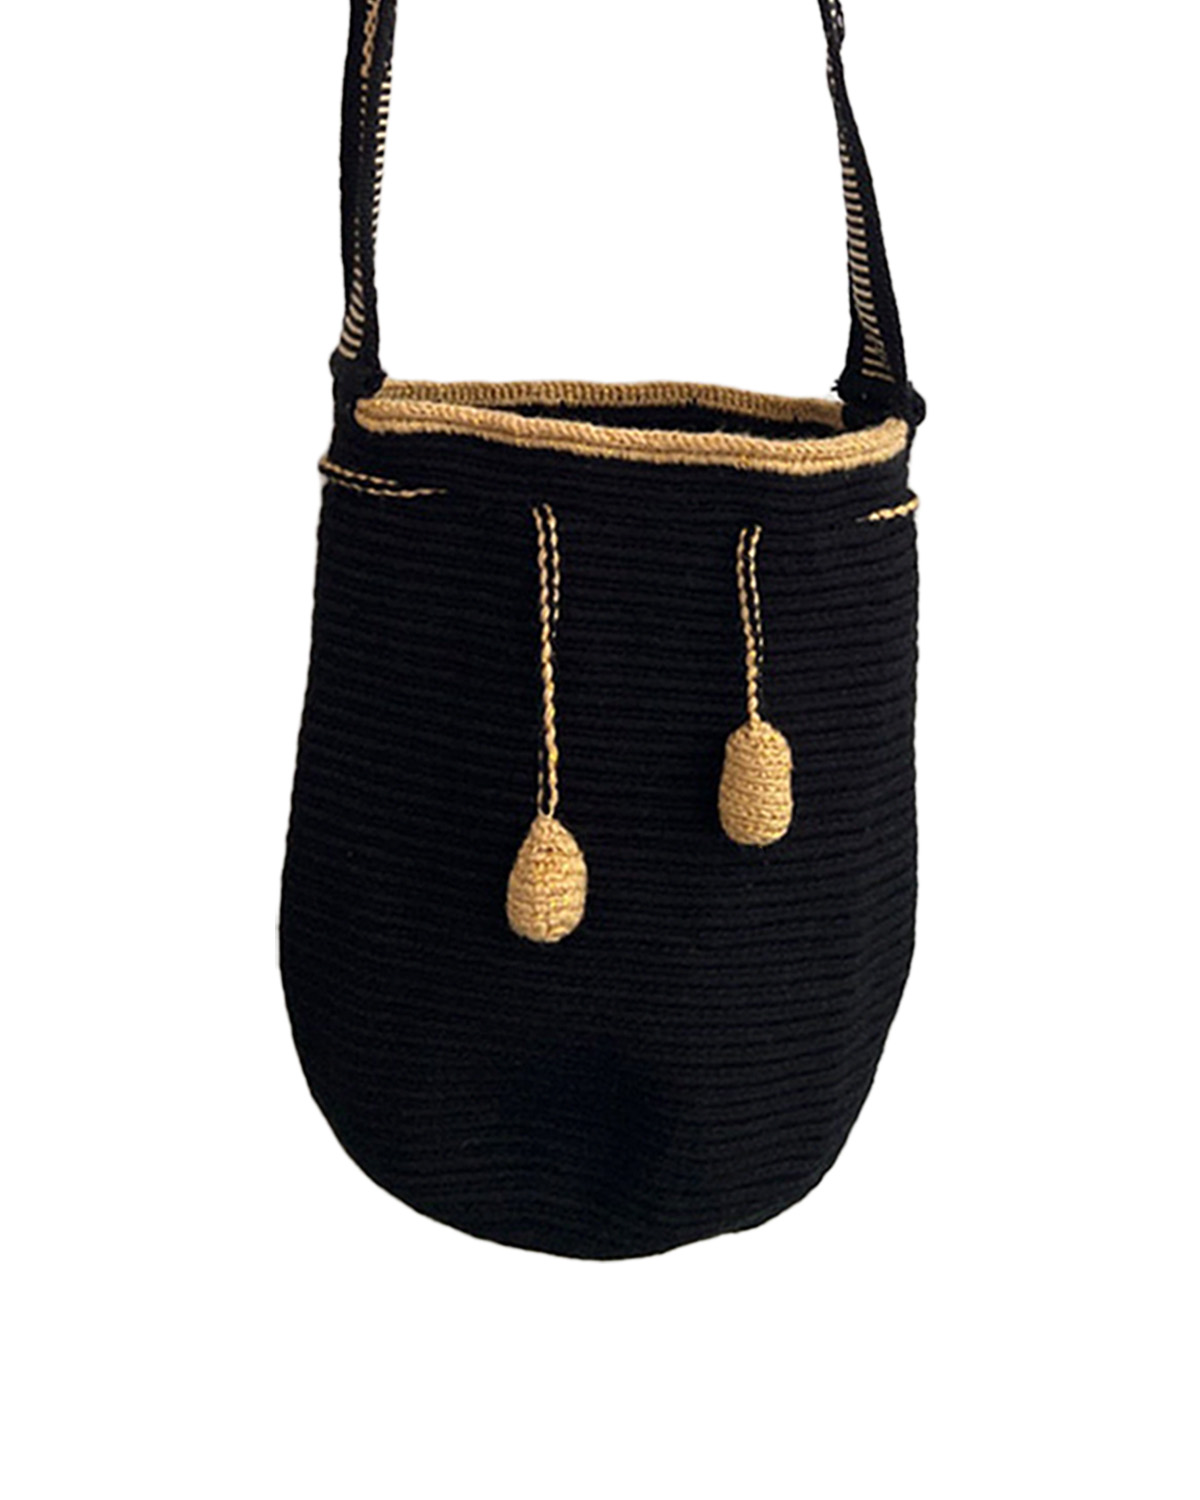 Black & Gold - Medium - Essentials Bag 1